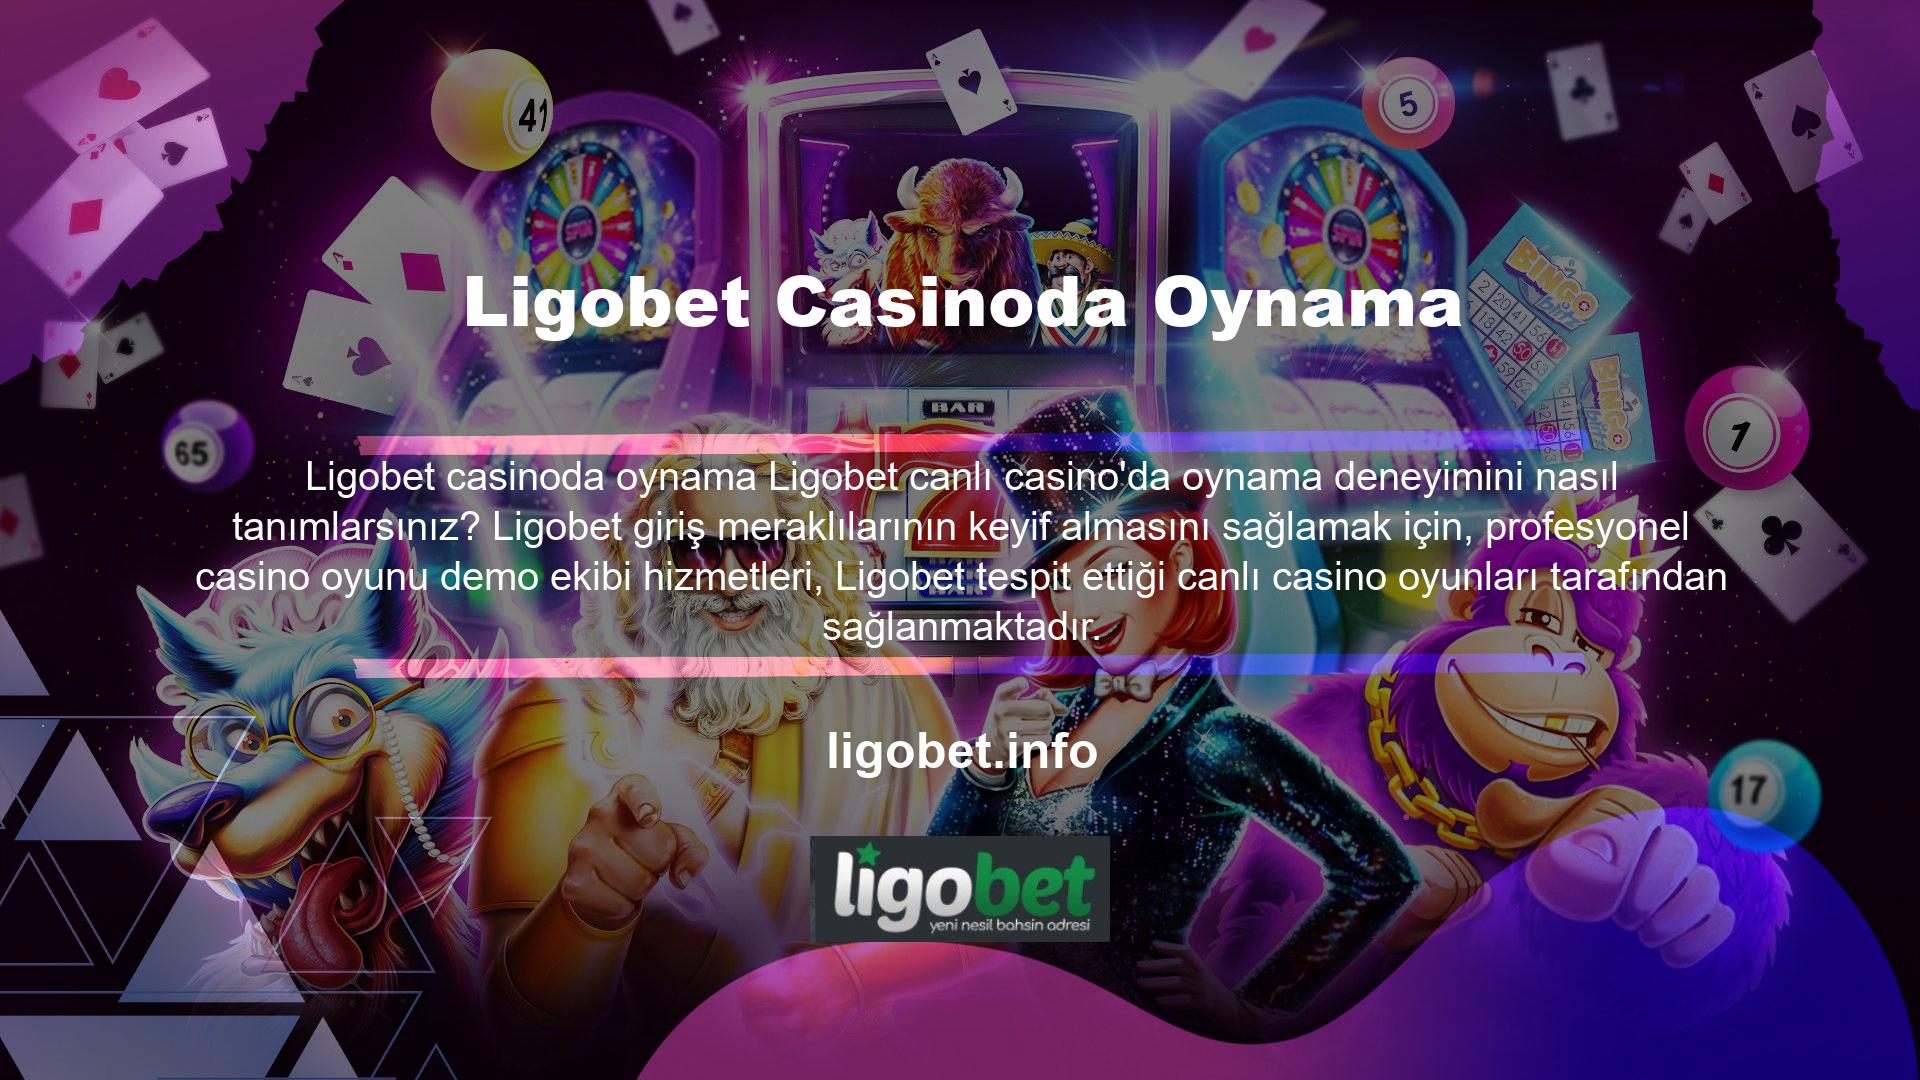 Daha önce hiç casino oyunu oynamamış kişiler için şansa dayalı oyunlar sunan sitelerin sayısı oldukça fazladır